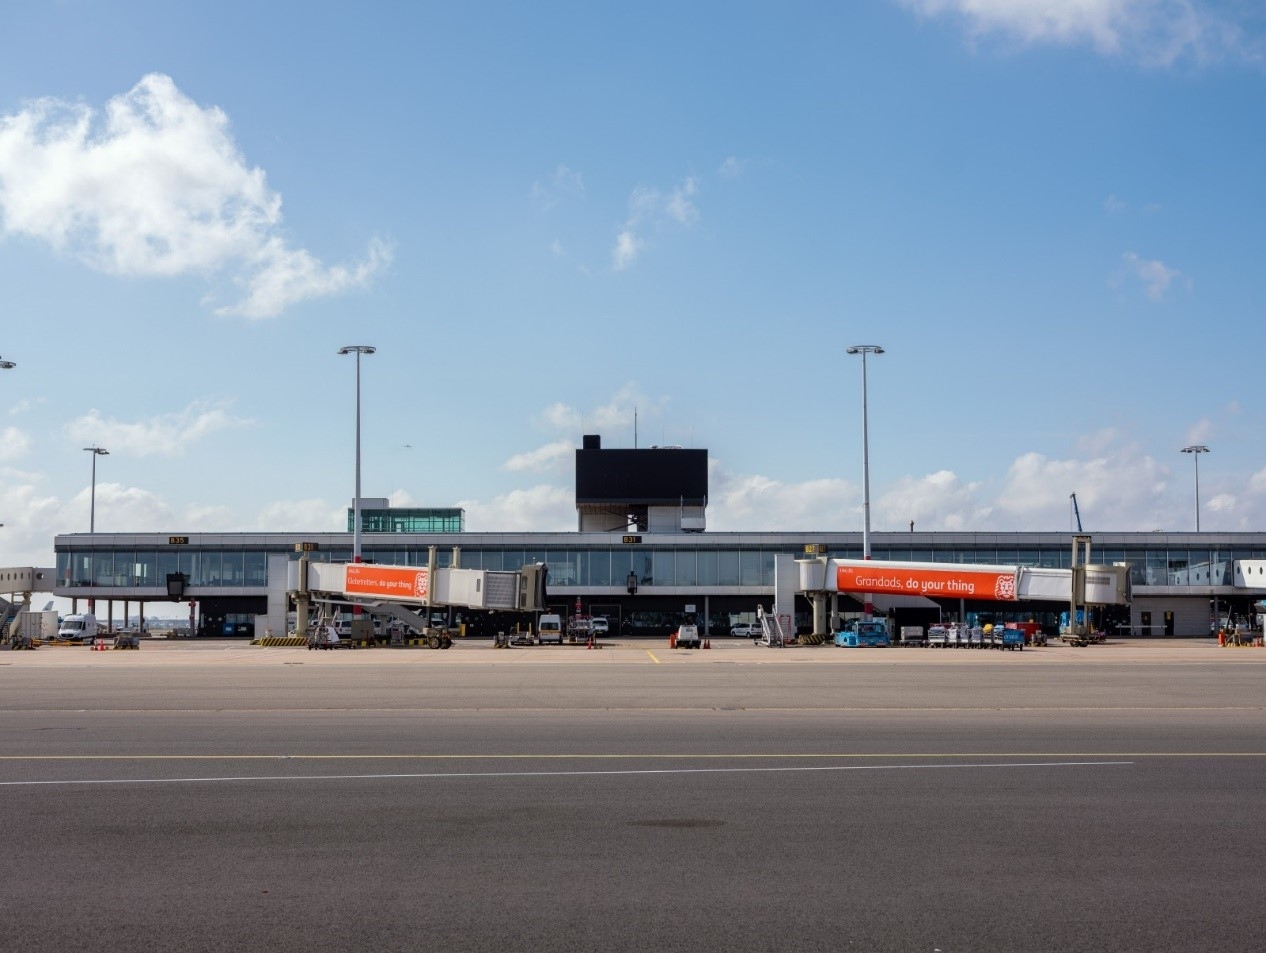 史基浦机场暂时关闭部分廊桥 全面聚焦核心业务